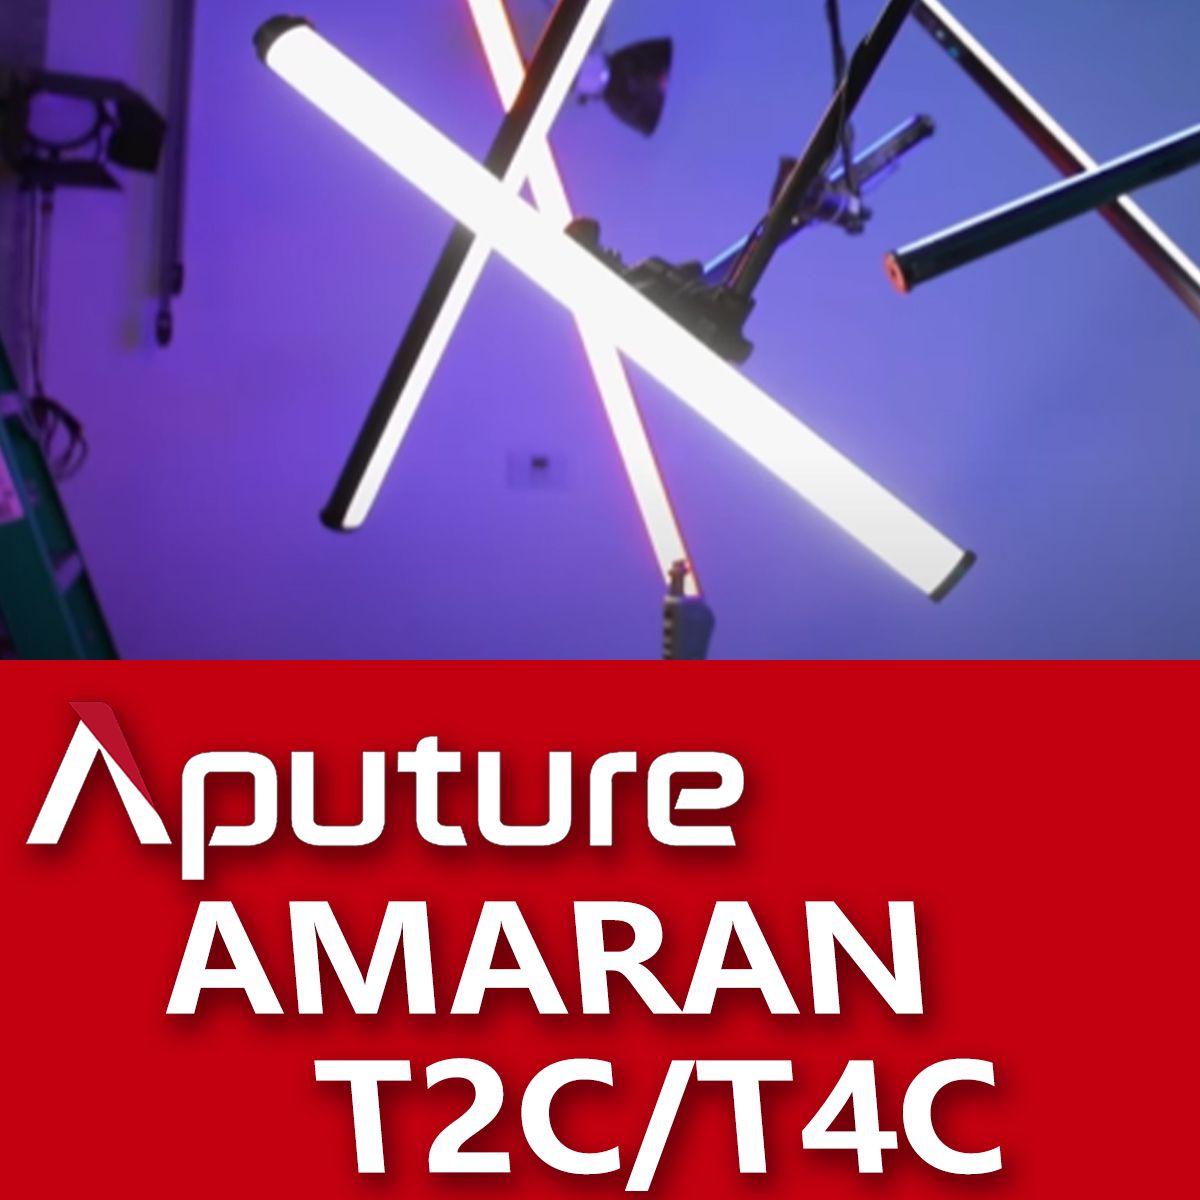 APUTURE AMARAN  T2C/T4C 燈管